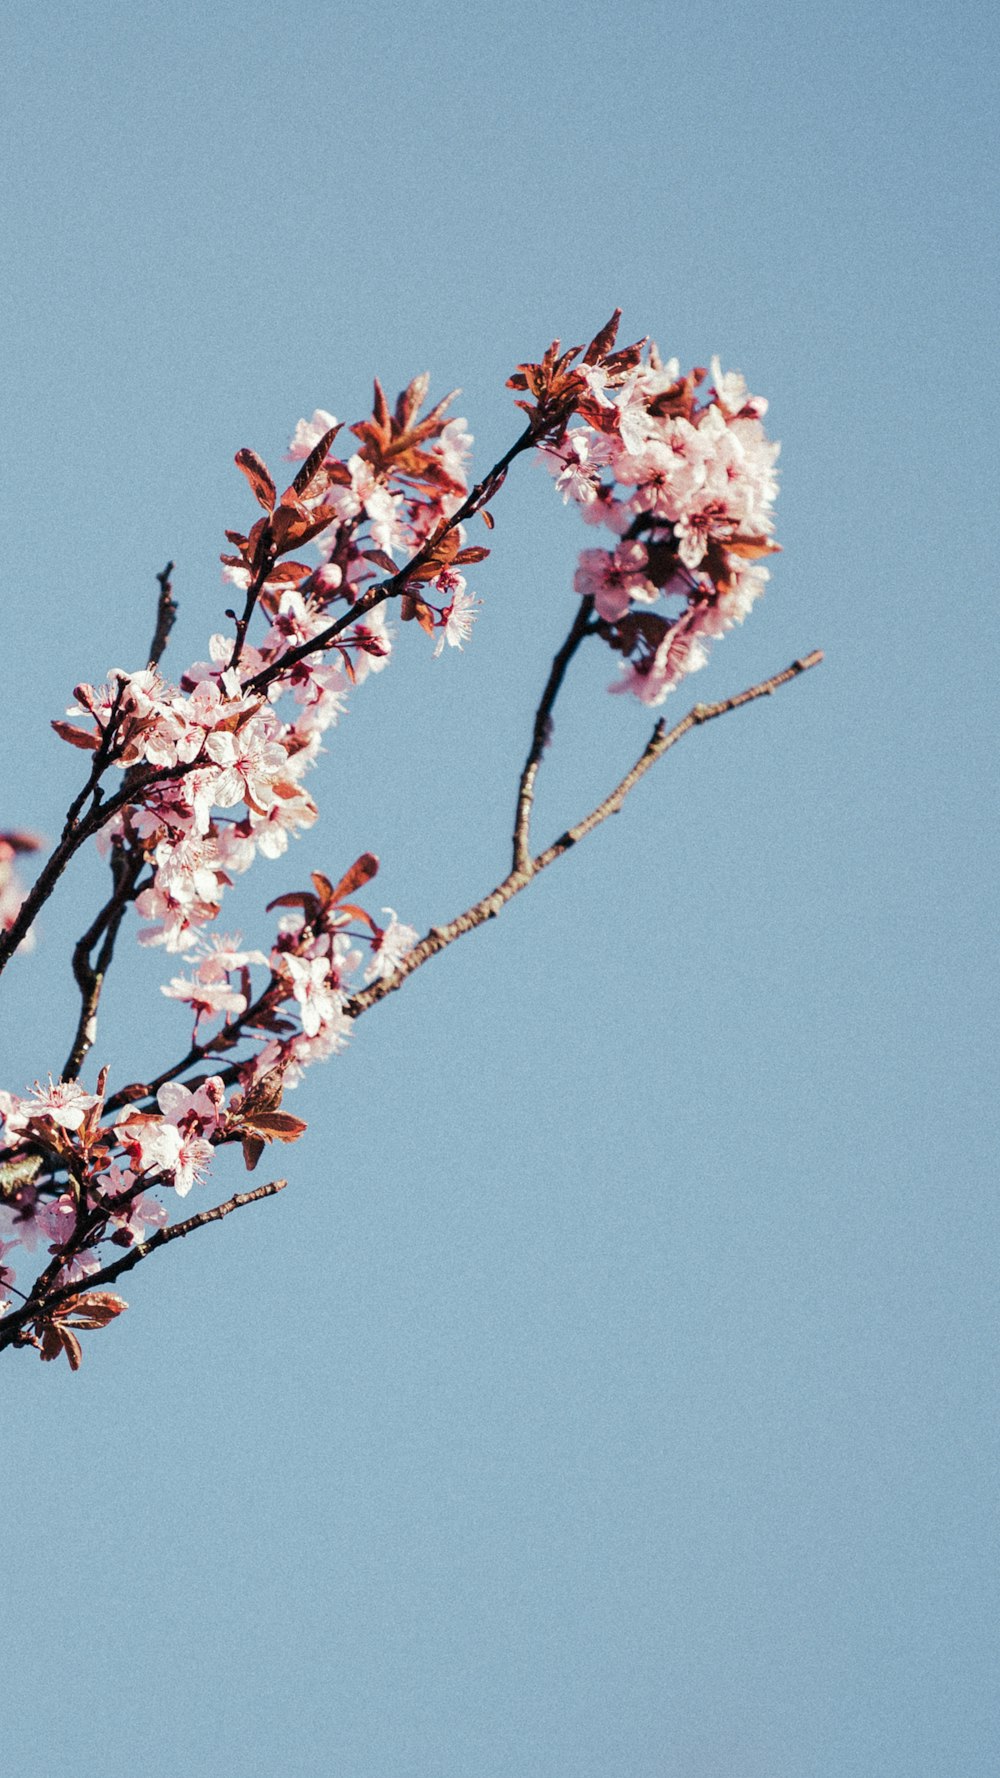 albero di fiori di ciliegio rosa e bianco